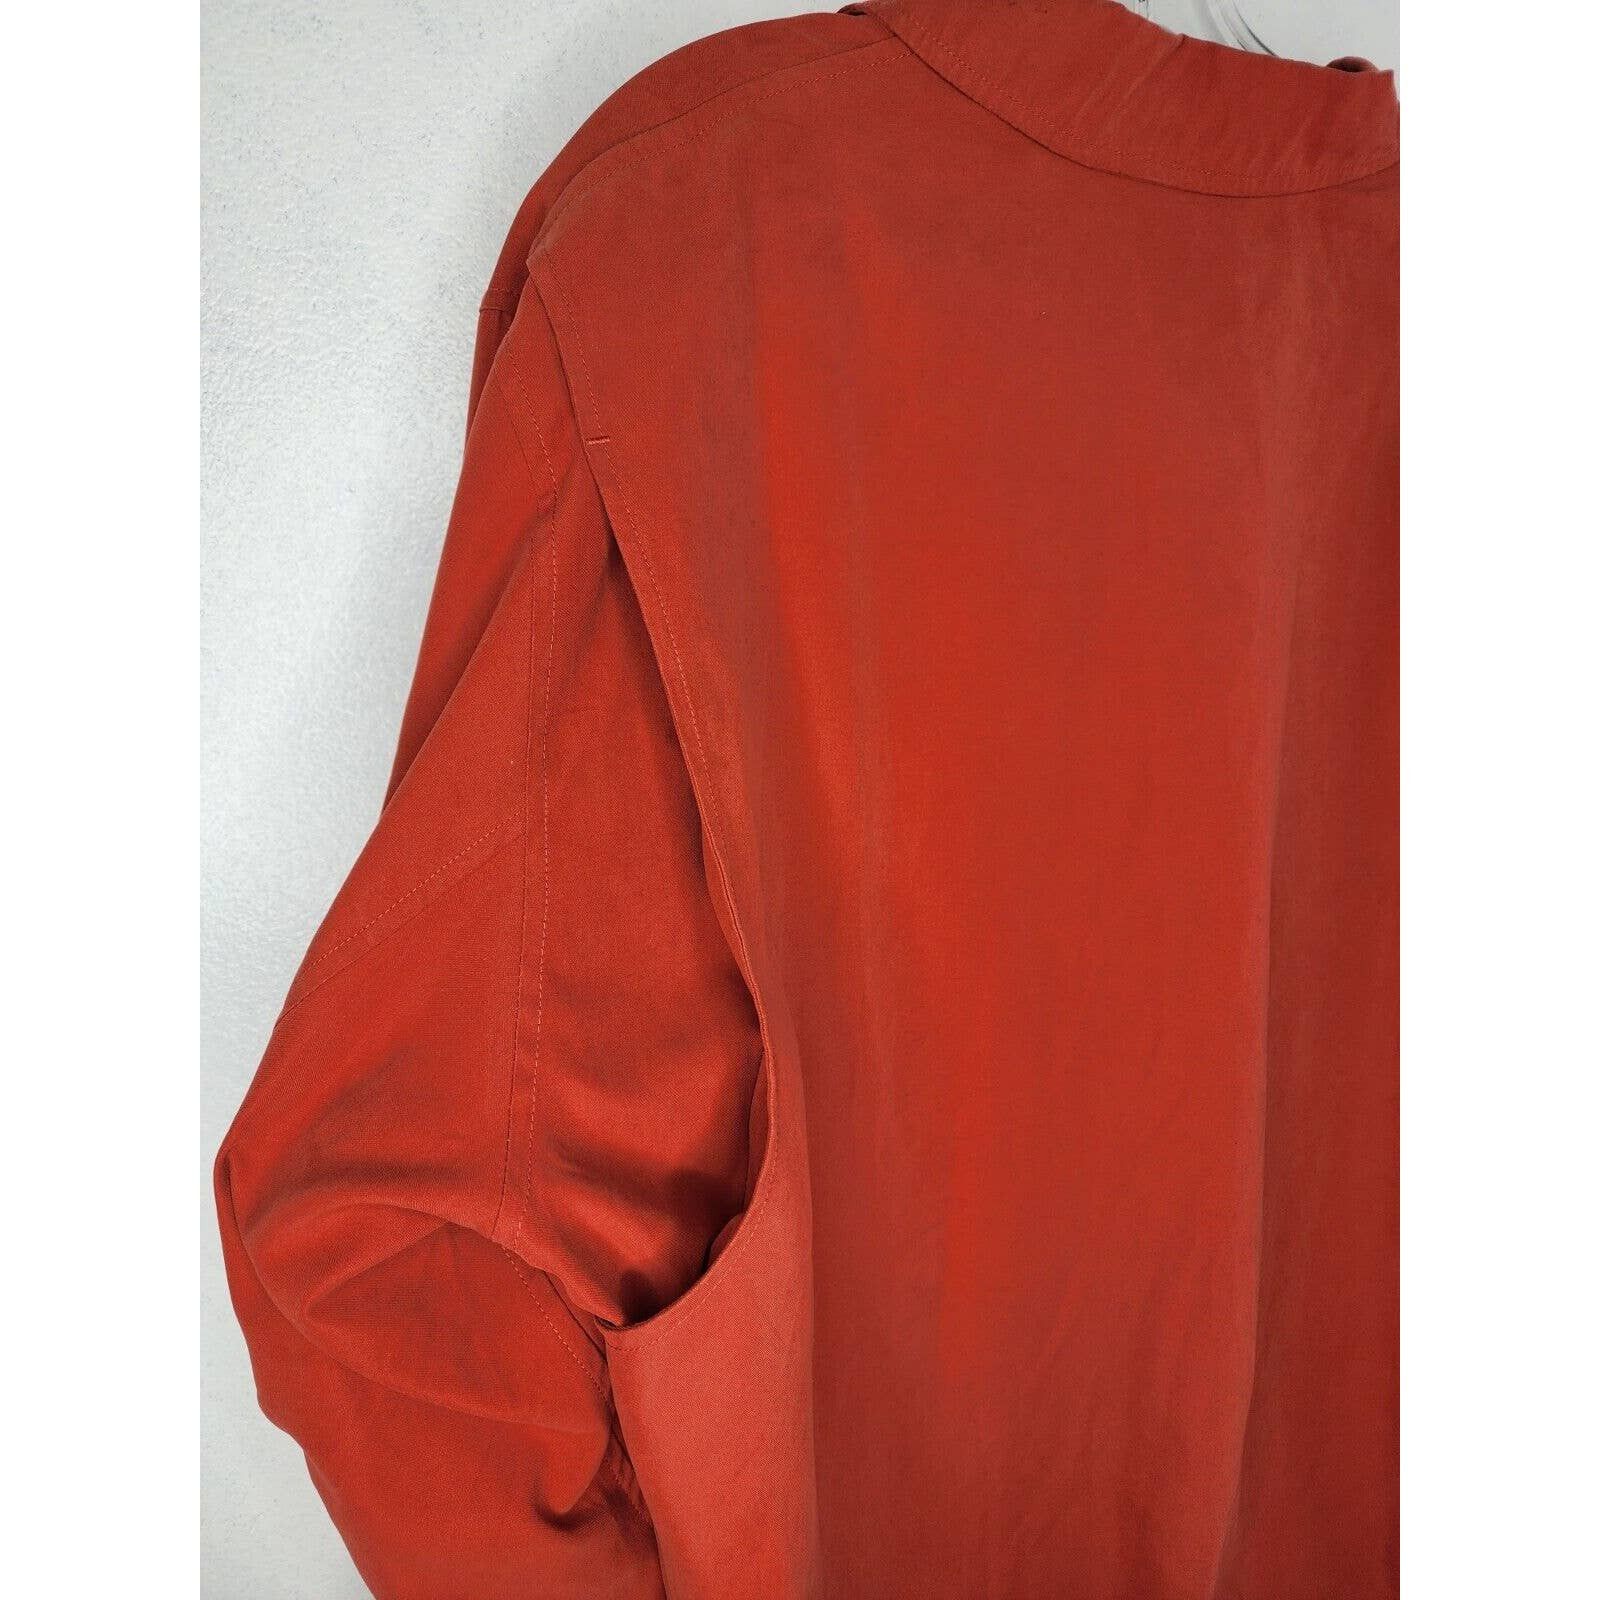 Orvis Orvis Signature Series Jacket Soft Faux Suede Burnt Orange Size US M / EU 48-50 / 2 - 5 Thumbnail